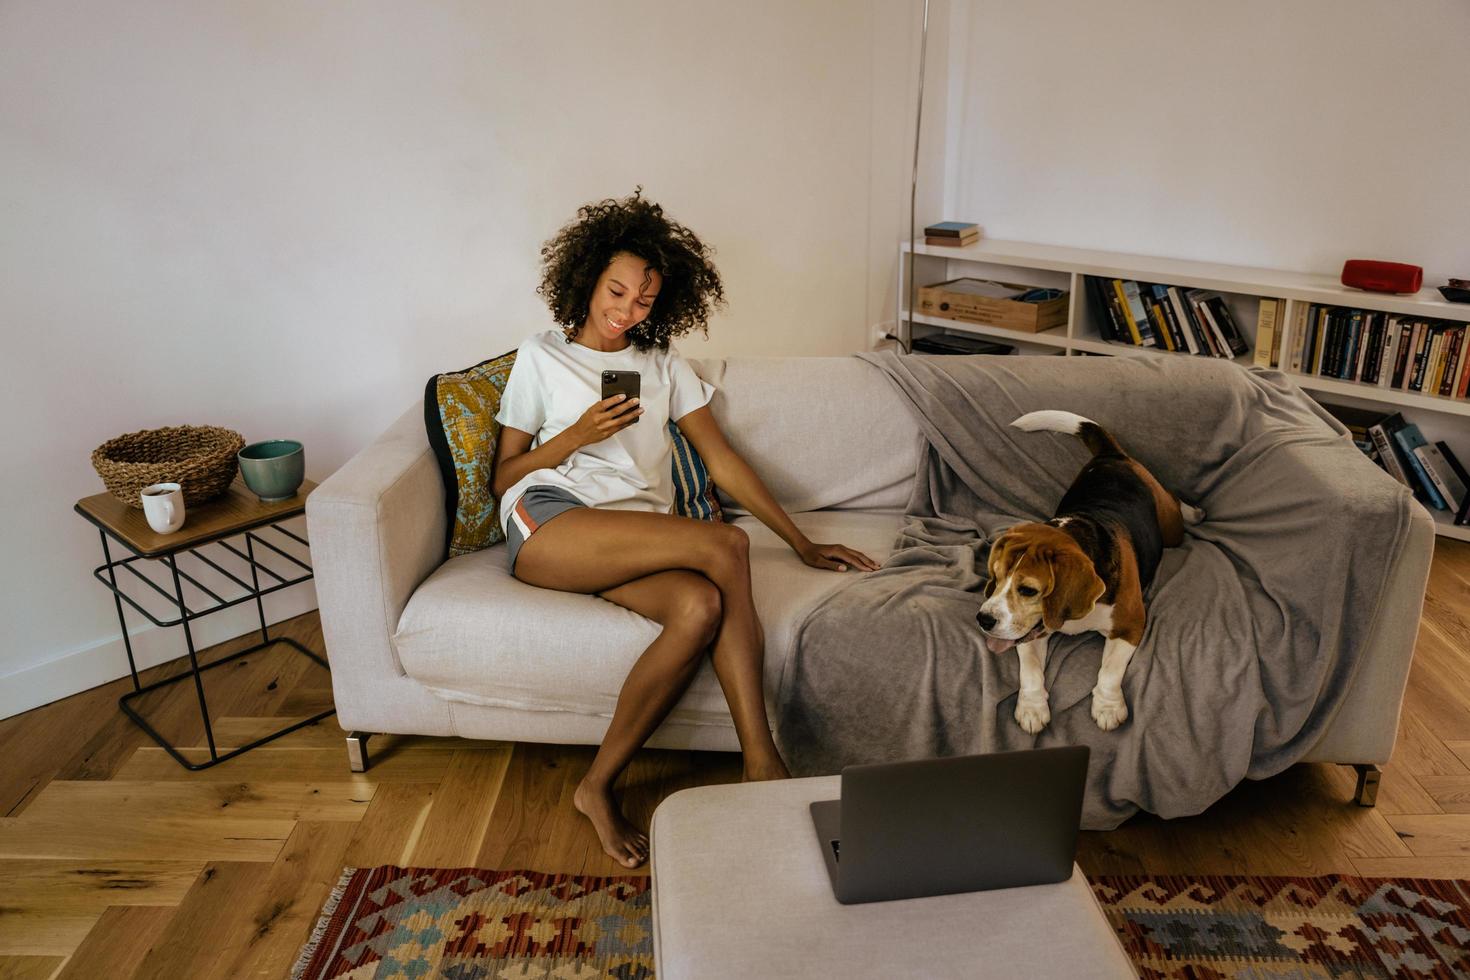 jovem negra usando telefone celular enquanto descansava com seu cachorro no sofá foto